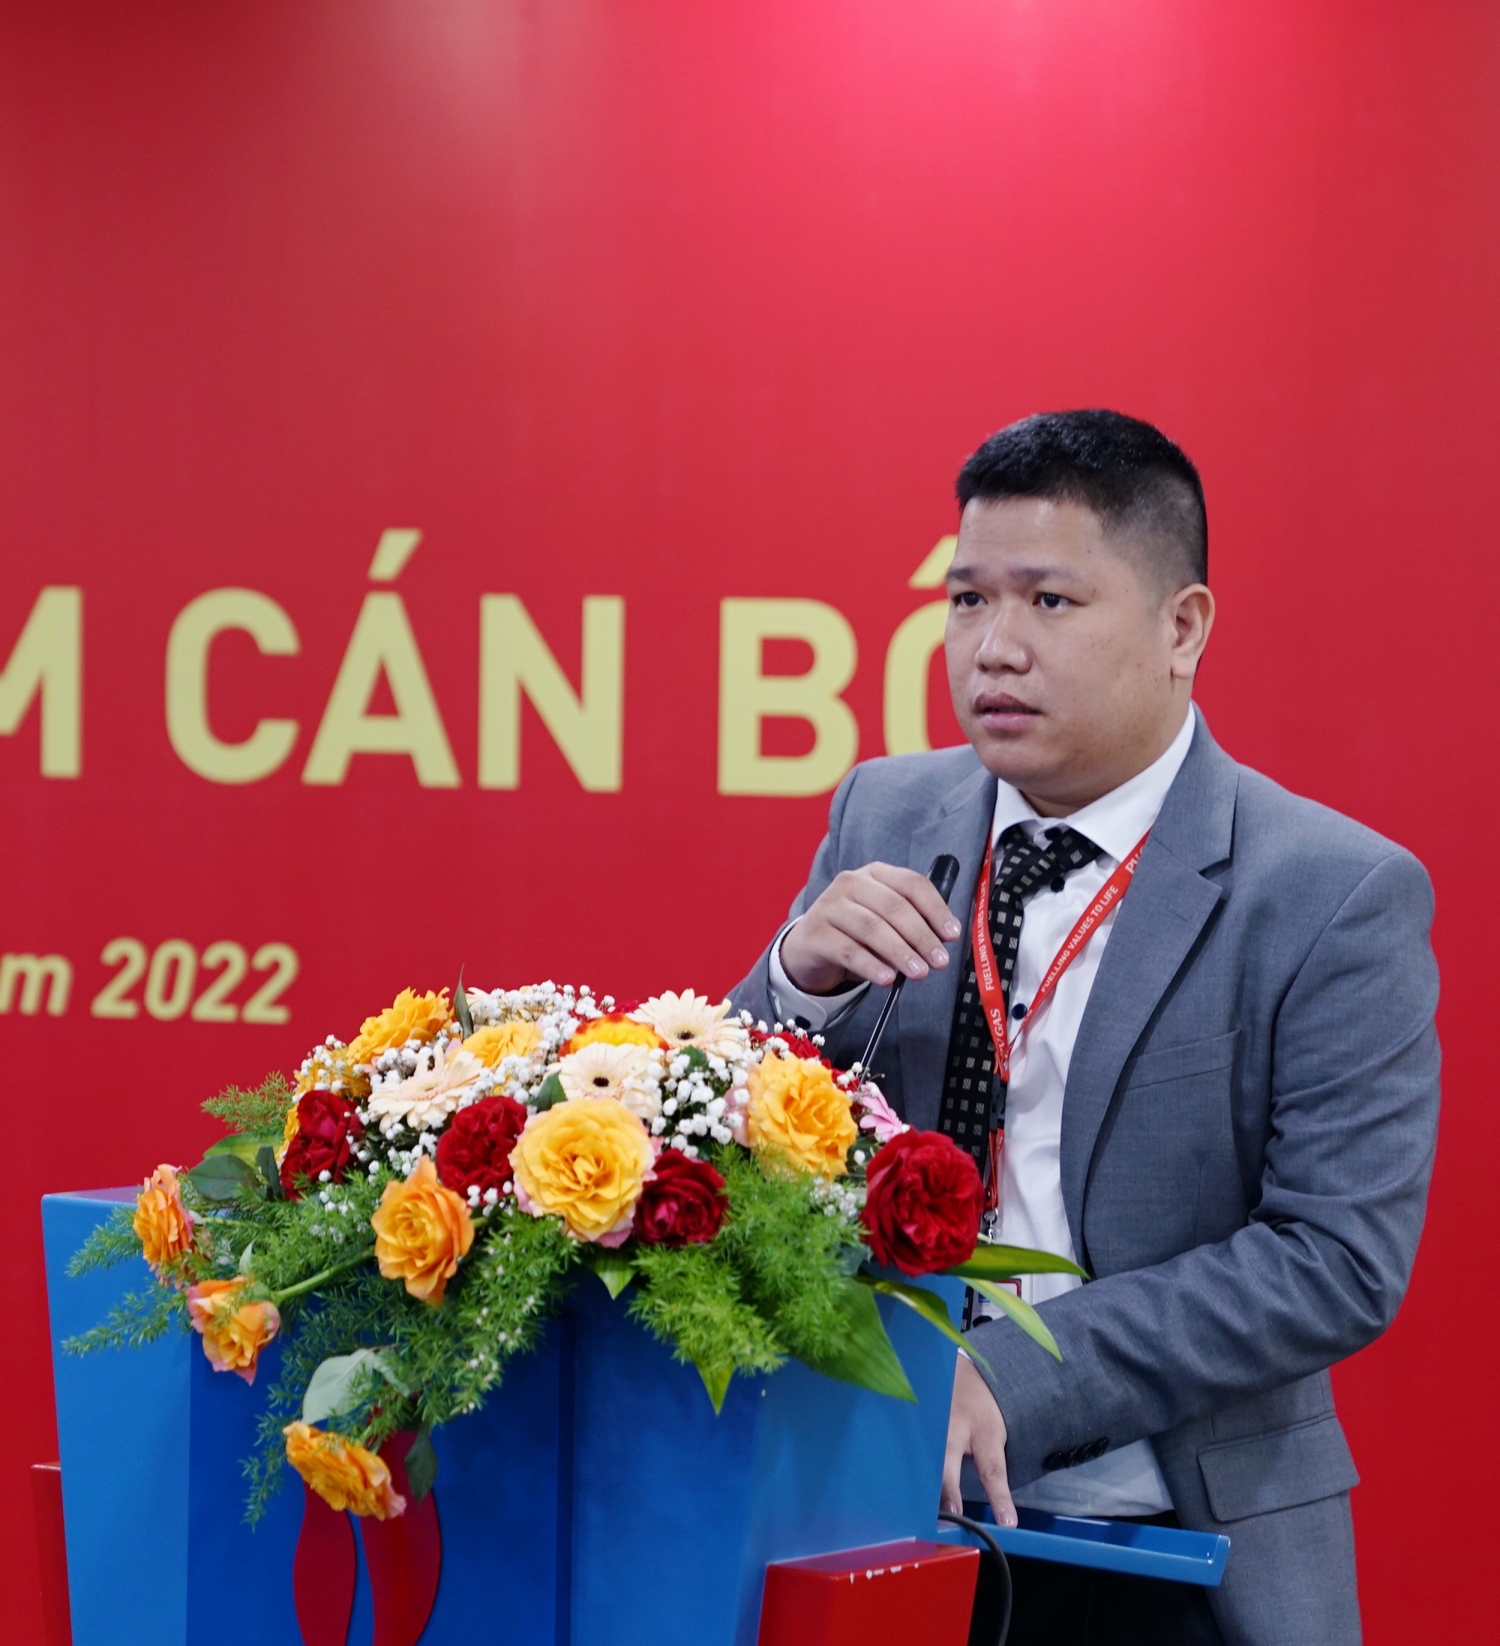 Đồng chí Trịnh Minh Hoài phát biểu nhận nhiệm vụ ở cương vị mới